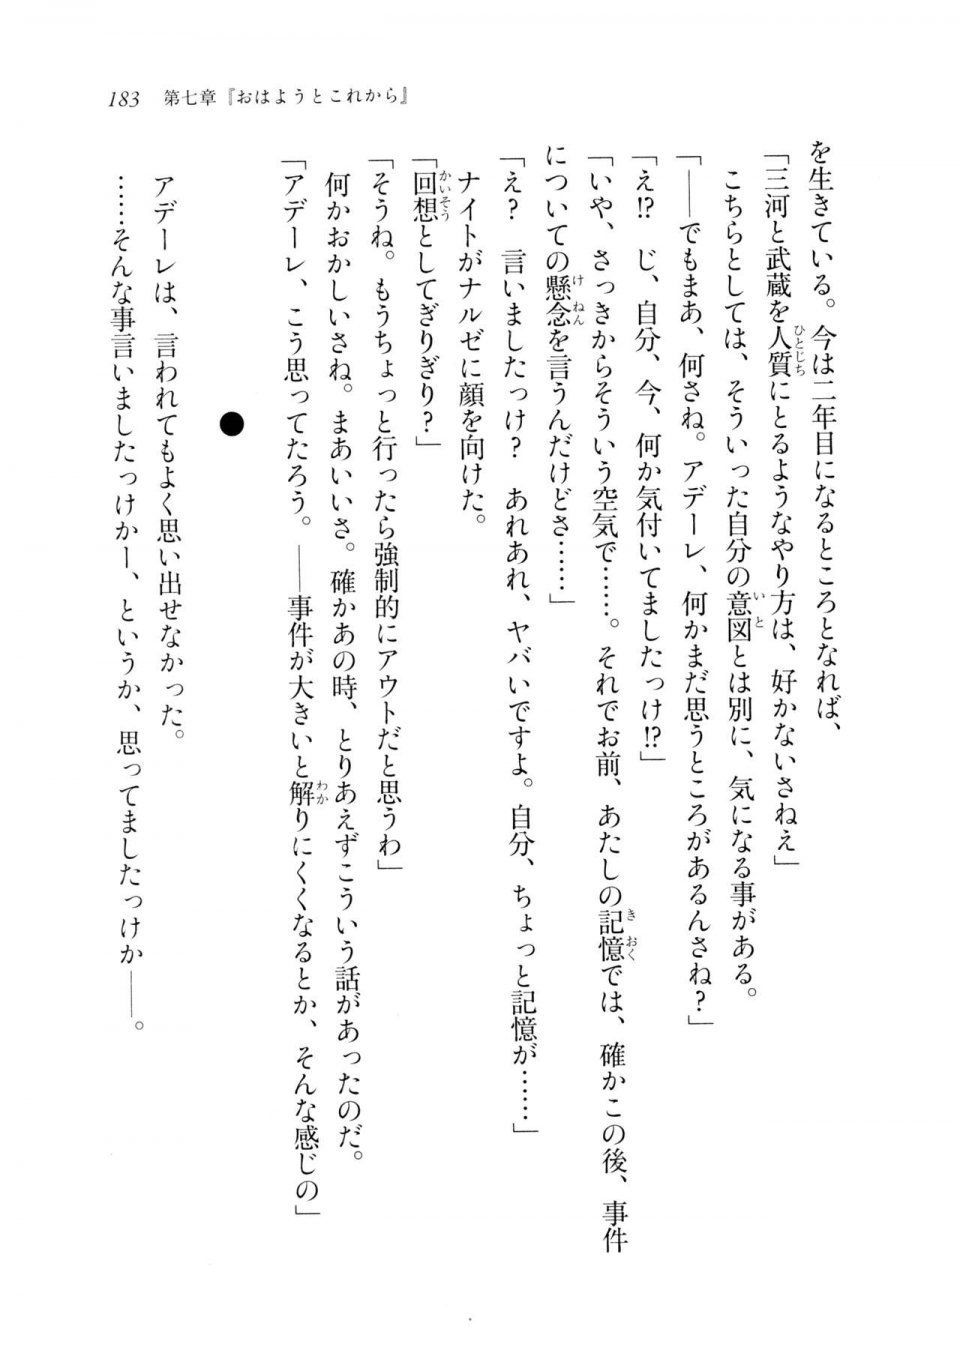 Kyoukai Senjou no Horizon LN Sidestory Vol 2 - Photo #181